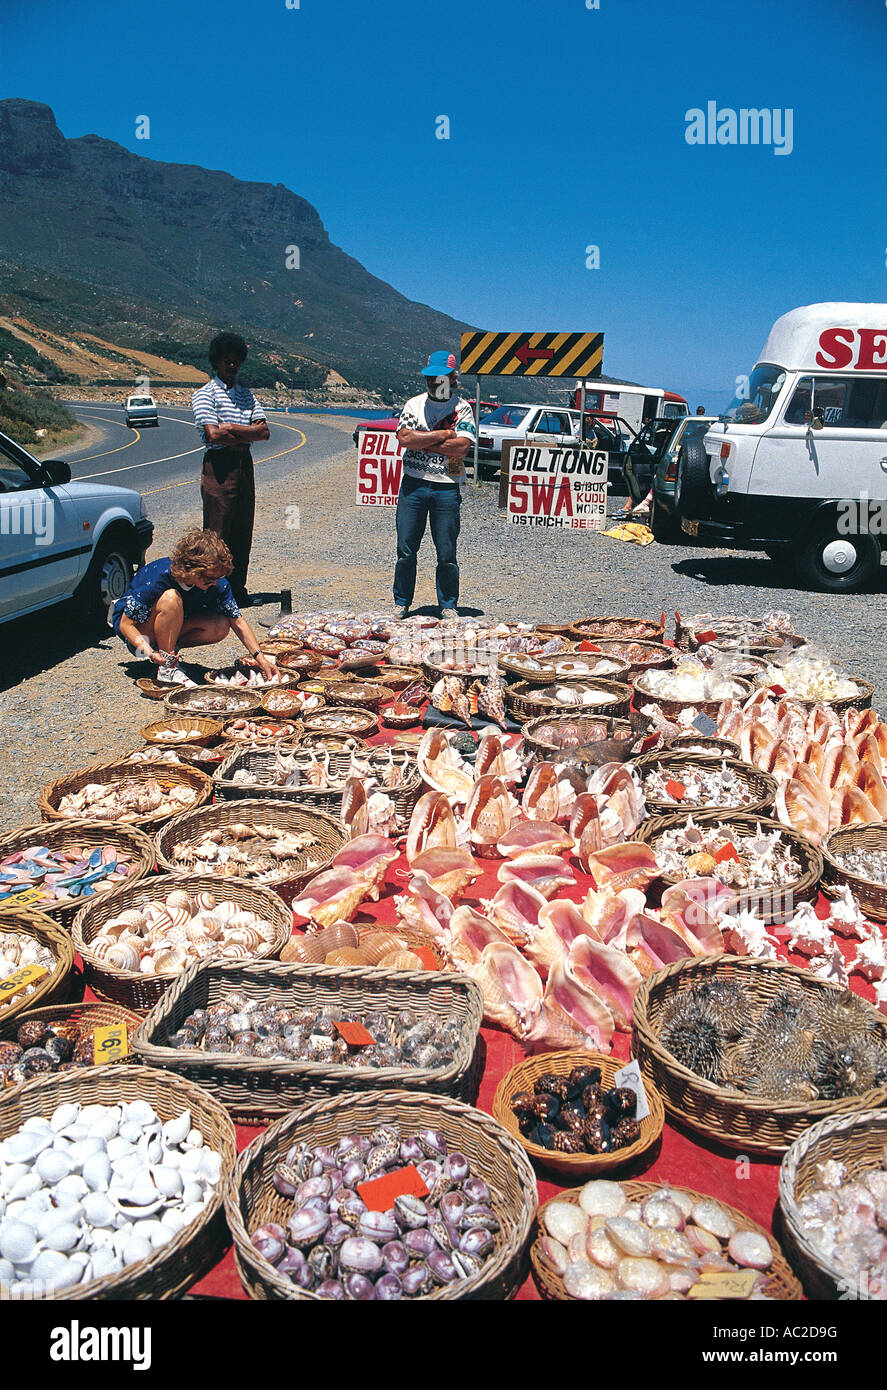 Colporteurs vendant des coquillages de viande séchée et d'autres souvenirs sur Péninsule du Cap Cape Town Afrique du Sud Banque D'Images